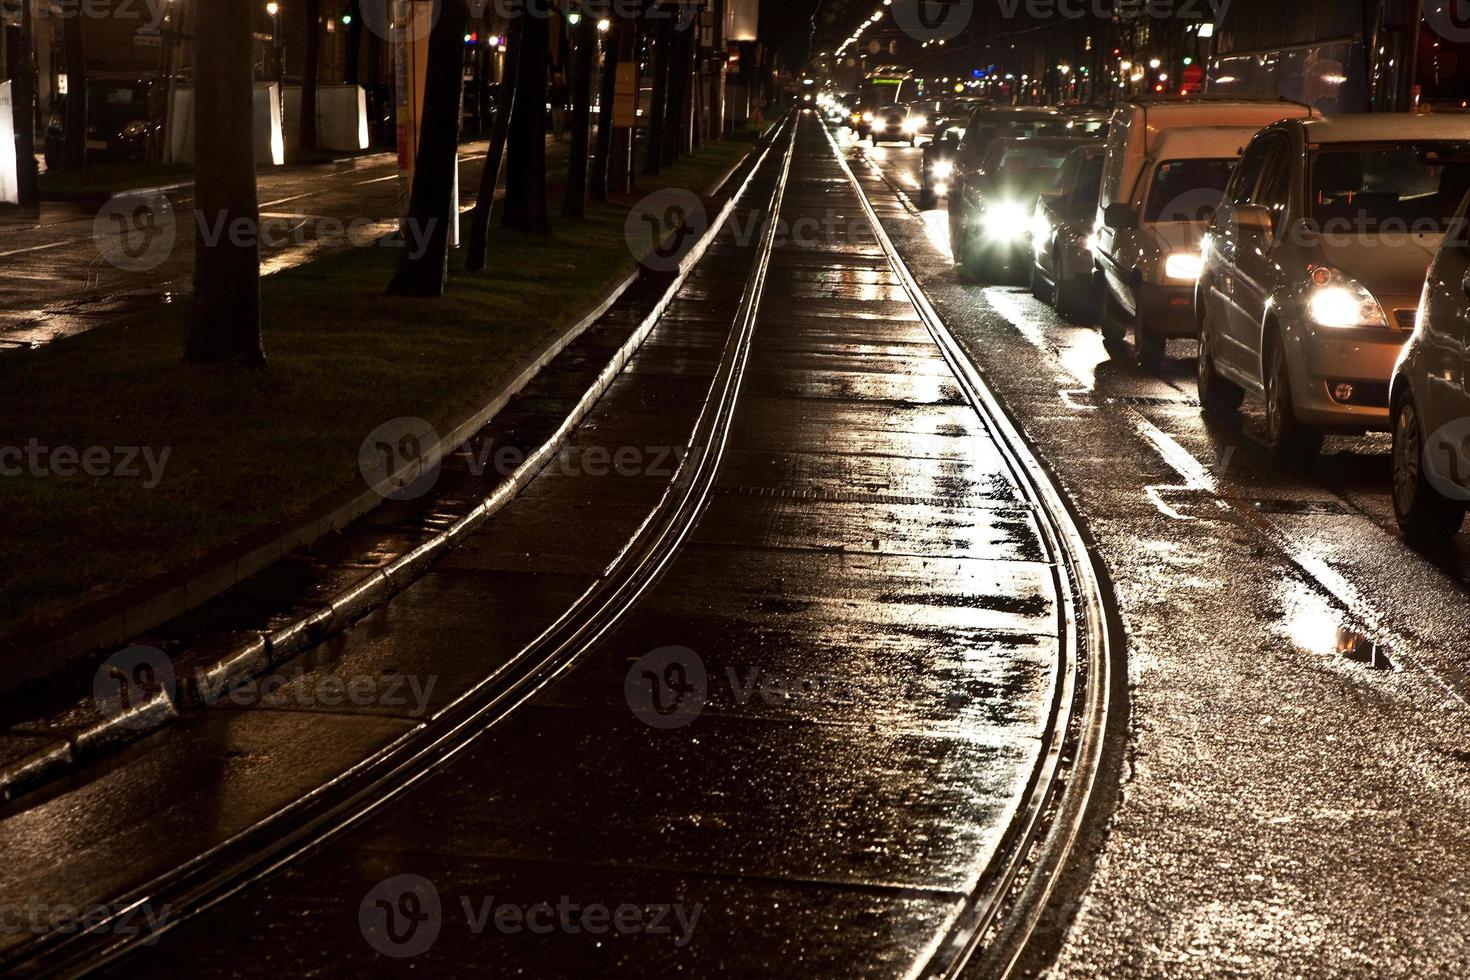 trilhos molhados do carrinho nas ruas estão refletindo luz foto